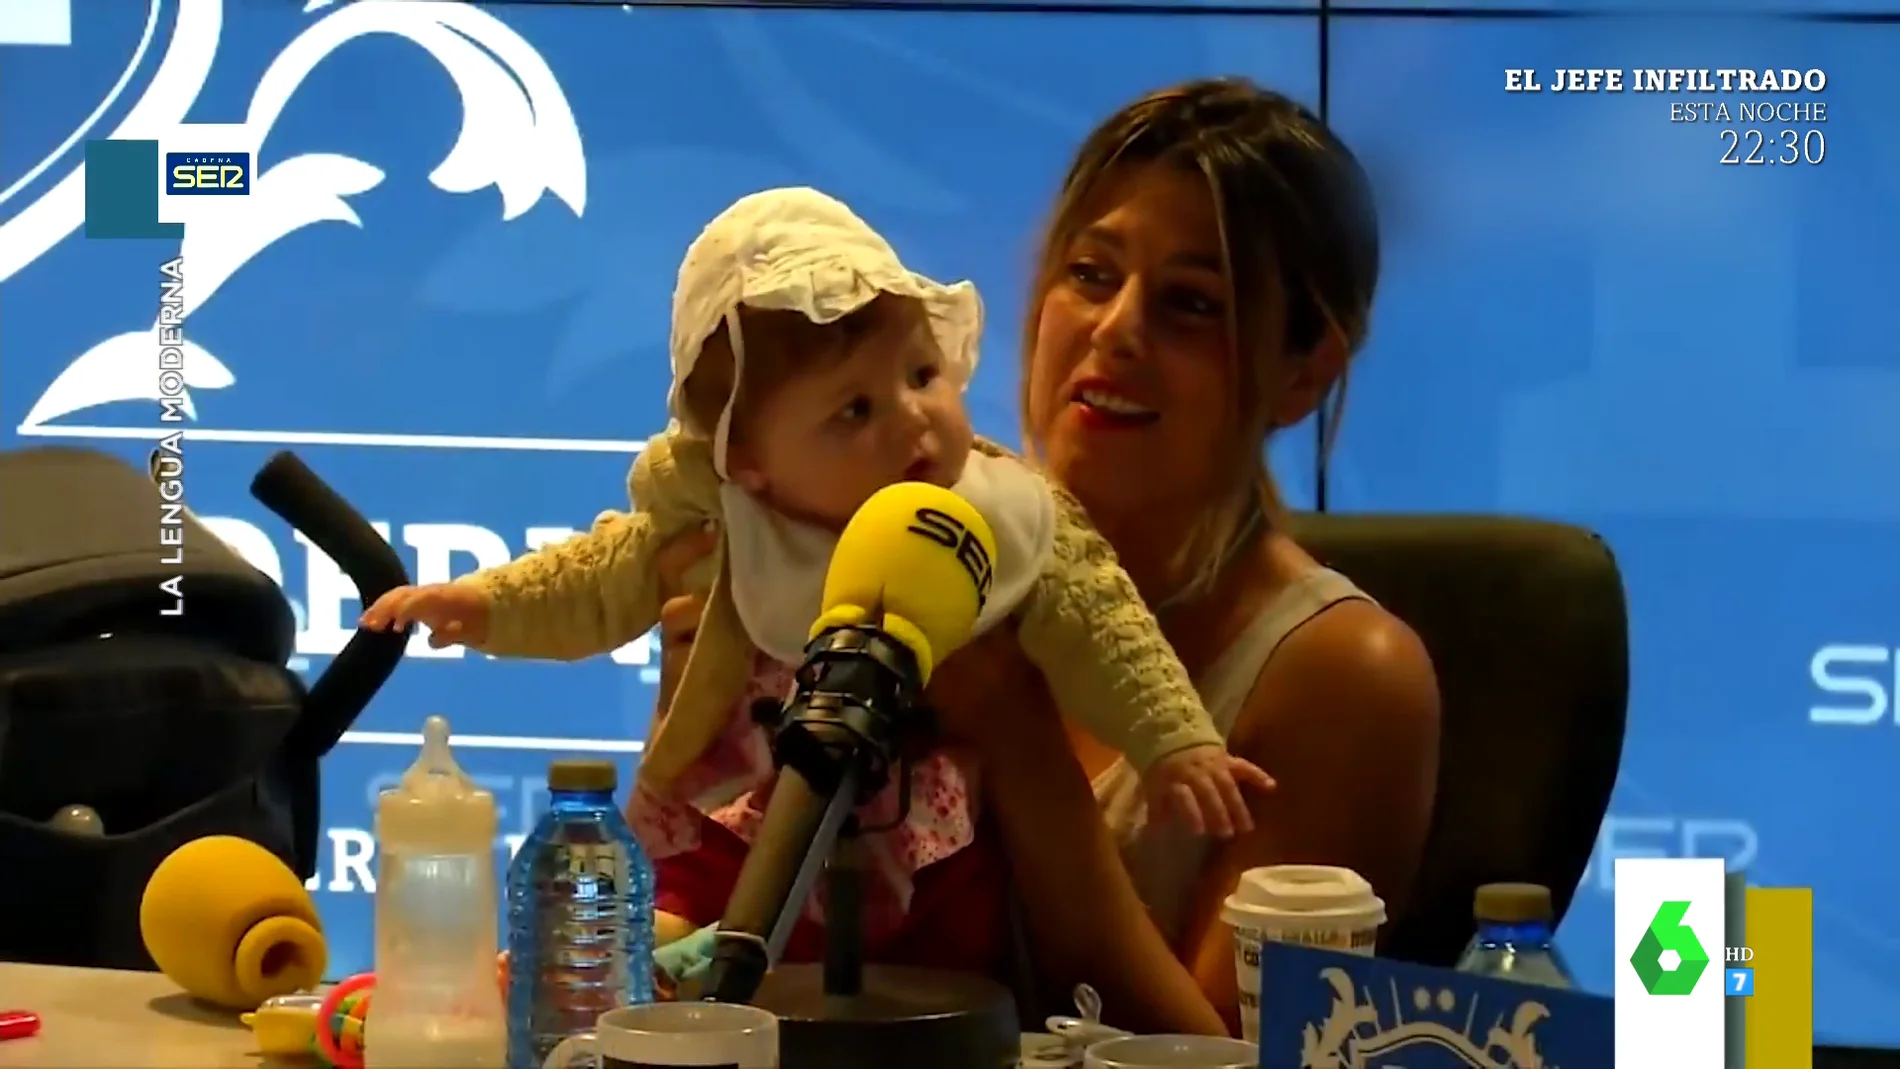 El entrañable vídeo de Valeria Ros con su hija Federica que enamora a Santiago Segura: "Se me cae la baba con esos mofletes"